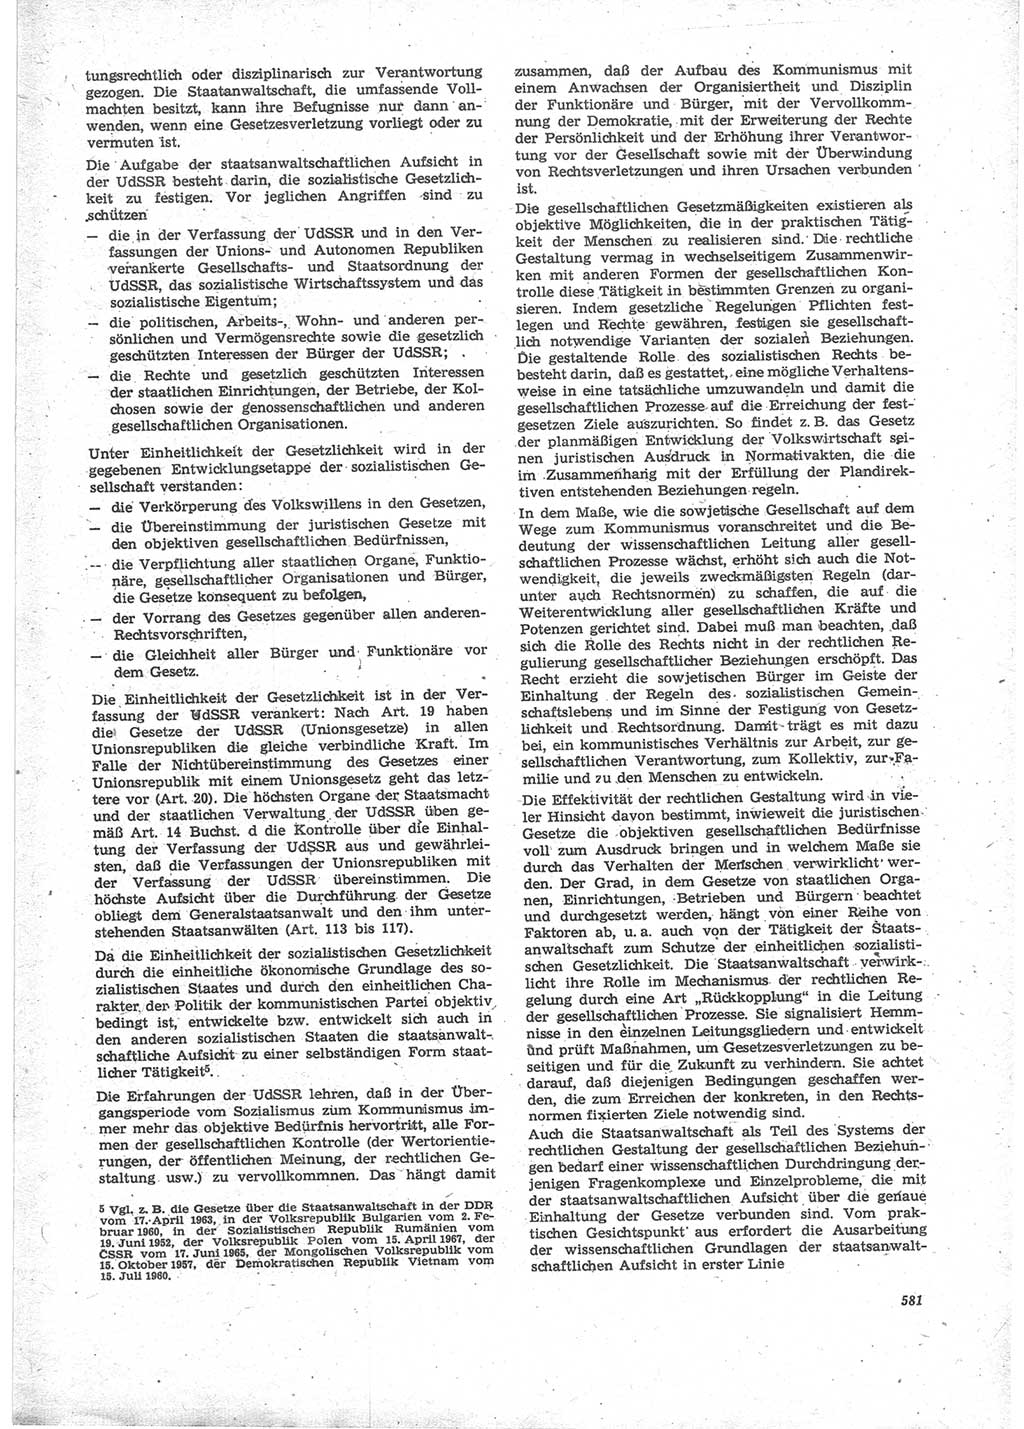 Neue Justiz (NJ), Zeitschrift für Recht und Rechtswissenschaft [Deutsche Demokratische Republik (DDR)], 24. Jahrgang 1970, Seite 581 (NJ DDR 1970, S. 581)